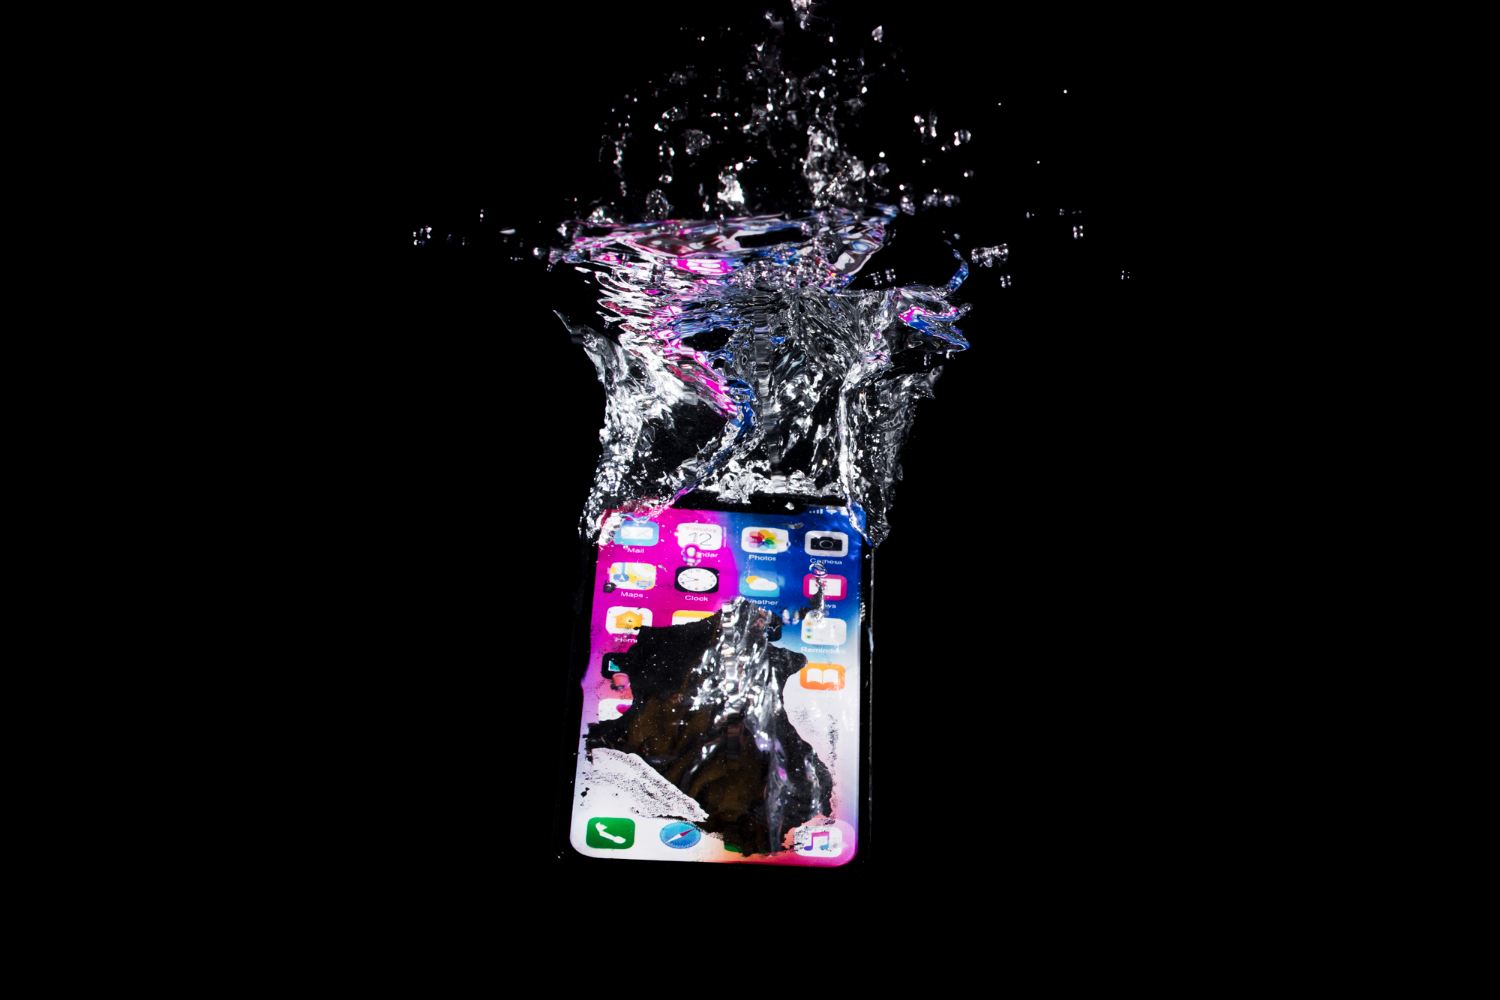 Pourquoi devriez-vous protéger votre téléphone portable de l'eau et d'autres liquides ?